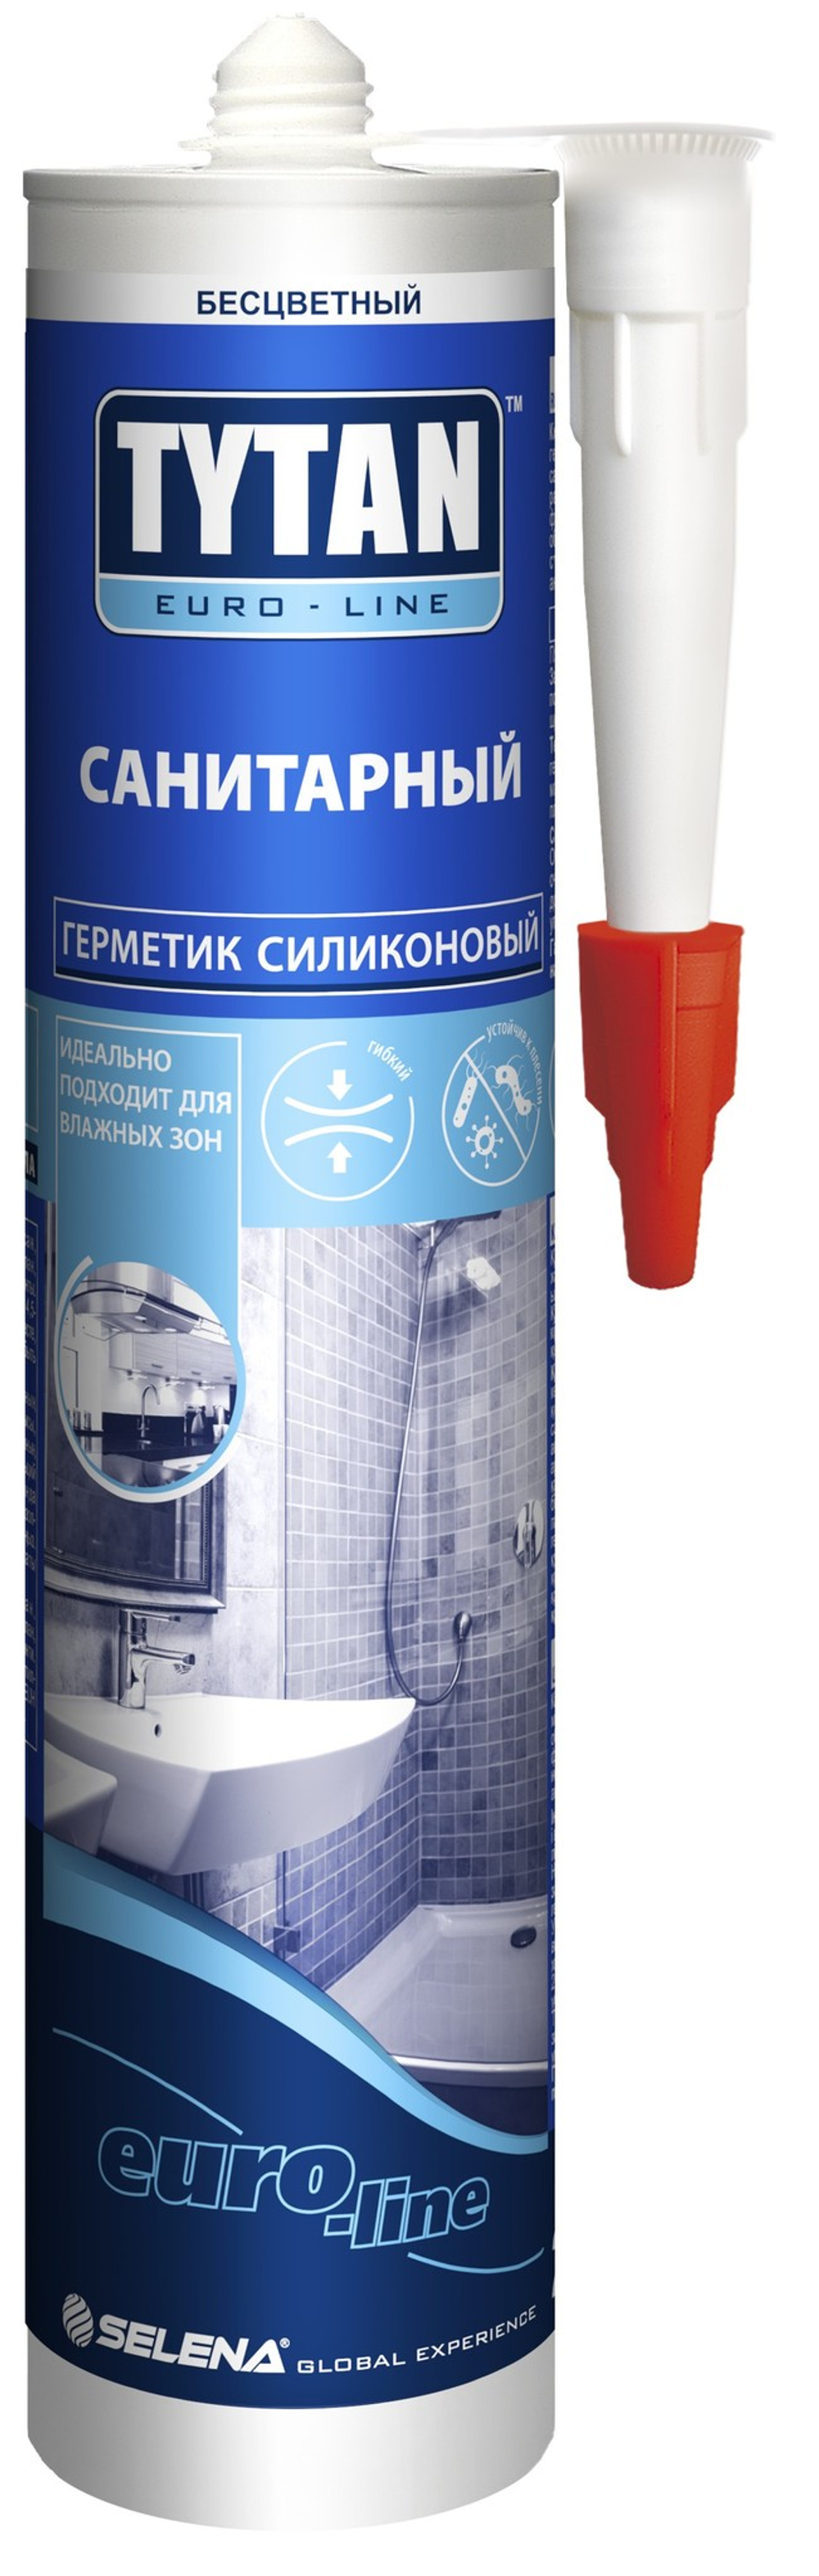 Герметик Tytan Euroline силиконовый санитарный бесцветный 290мл/330г